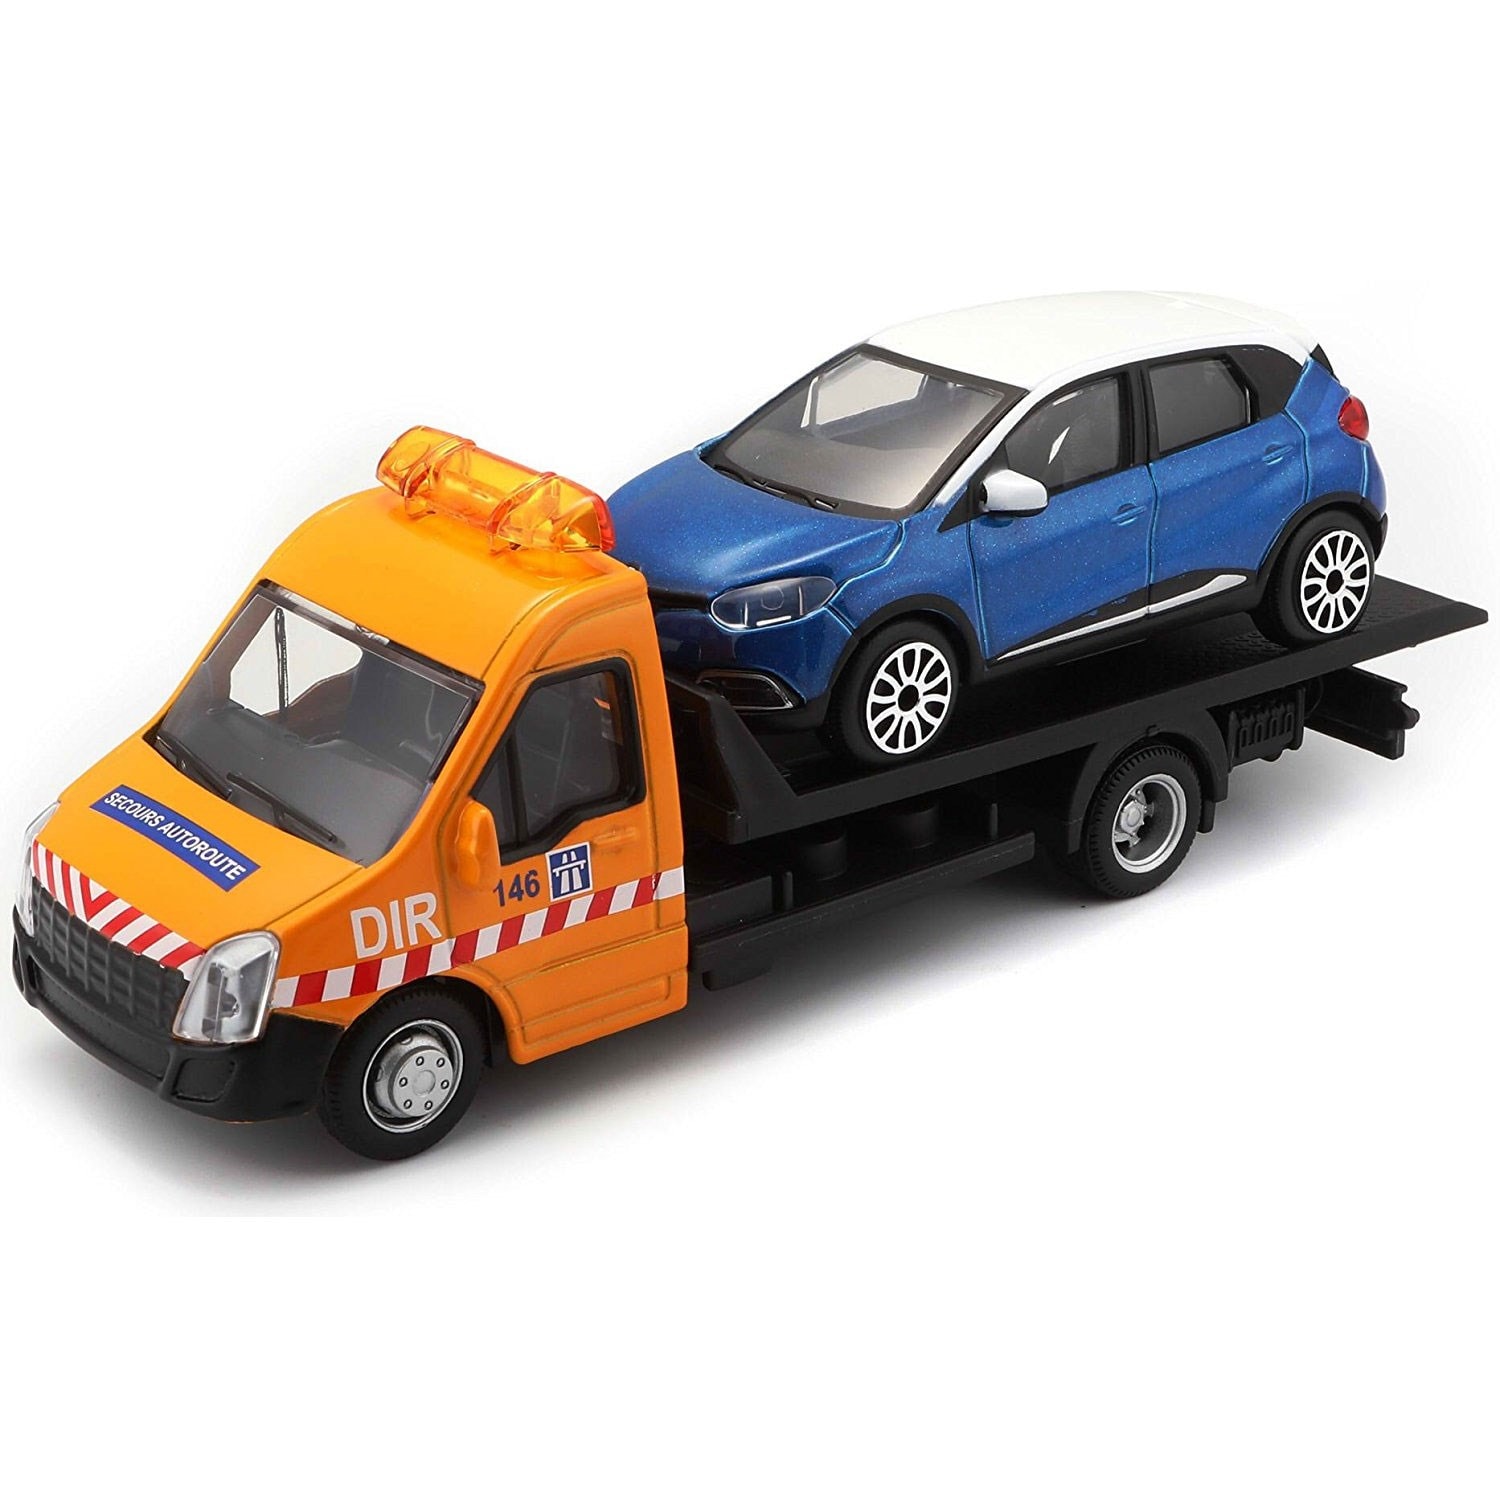 Kit sécurité dépannage pour voiture/camion